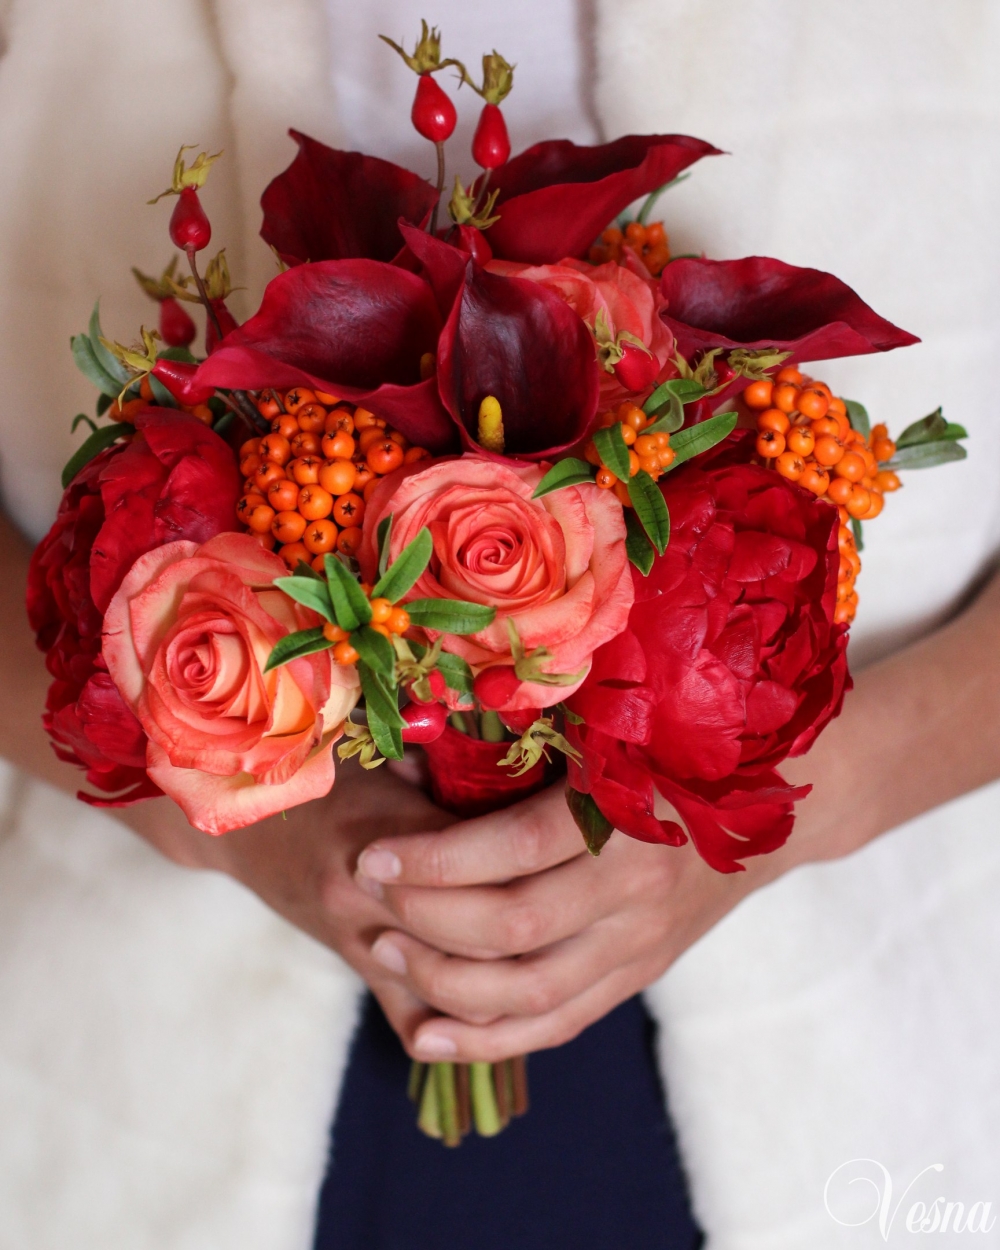 Букет невесты ручной работы. Цвет марсала, красный - осенняя гамма. Каллы, облепиха, розы, пионы, шиповник из полимерной глины.